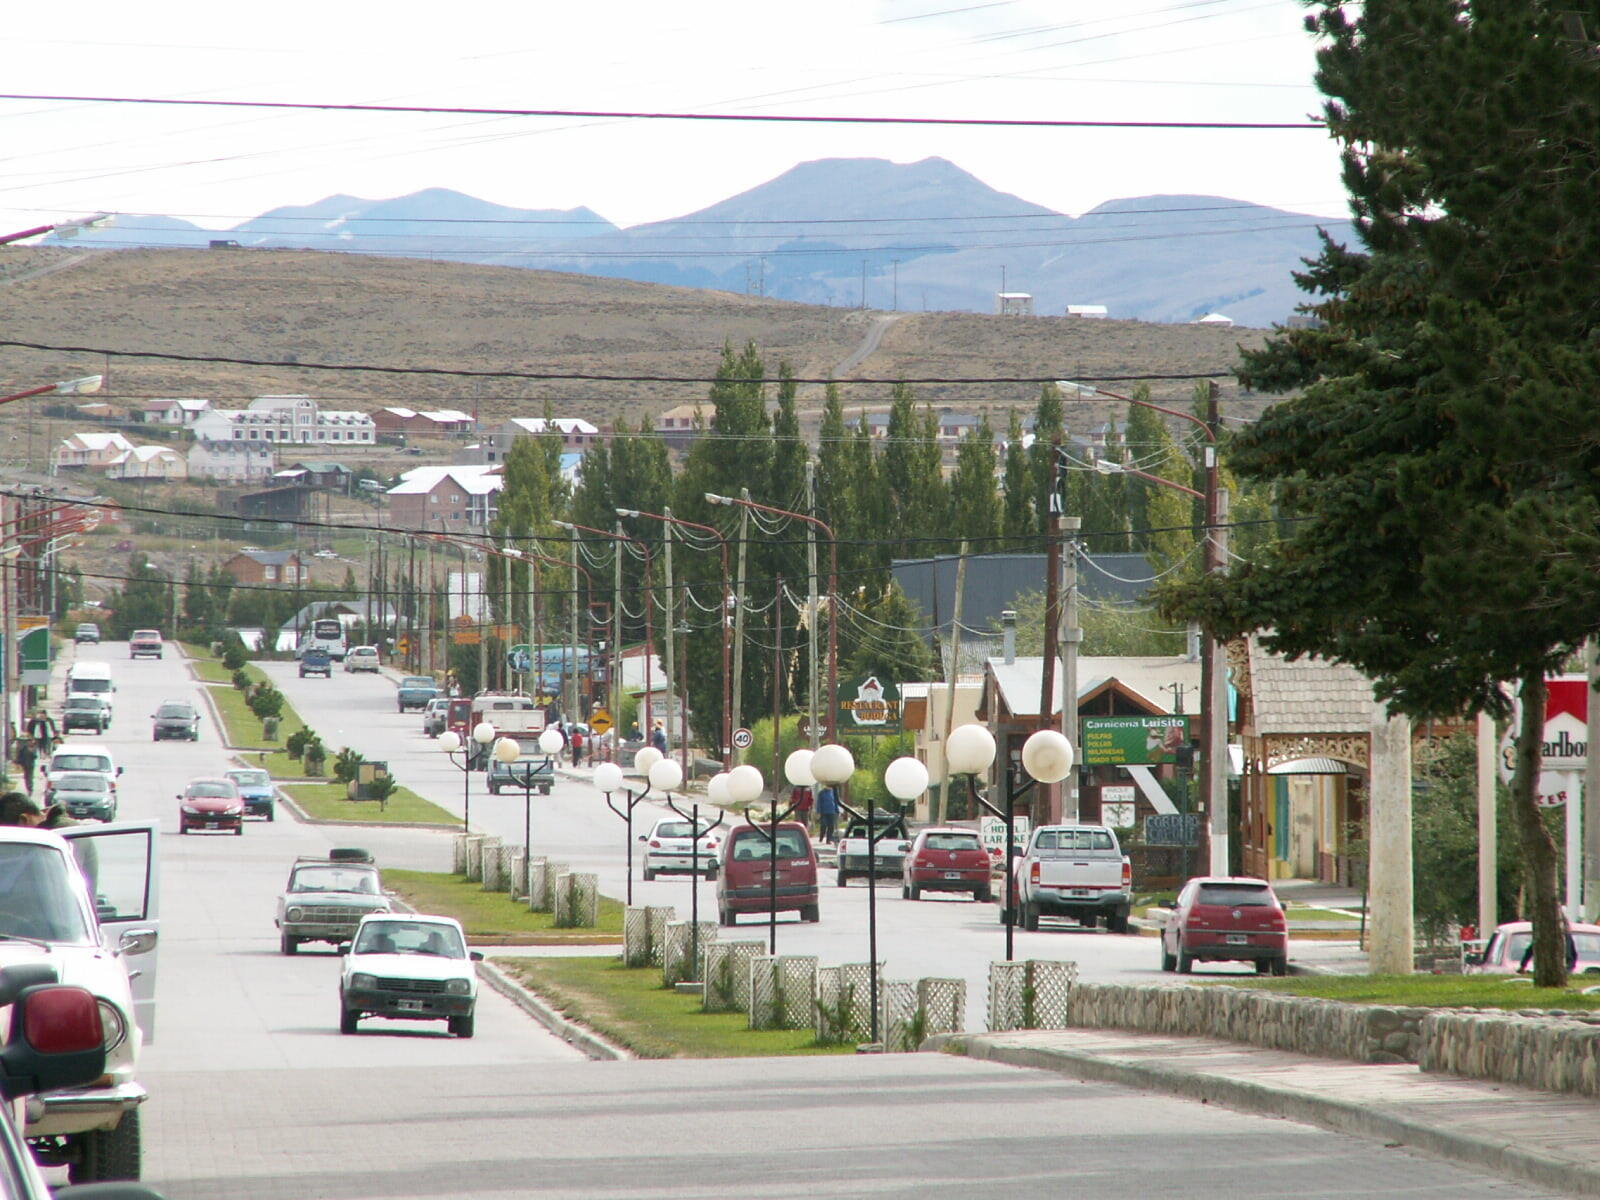 El Calafate - Avenida del Libertador, in El Calafate, Santa Cruz Province, Argentina.